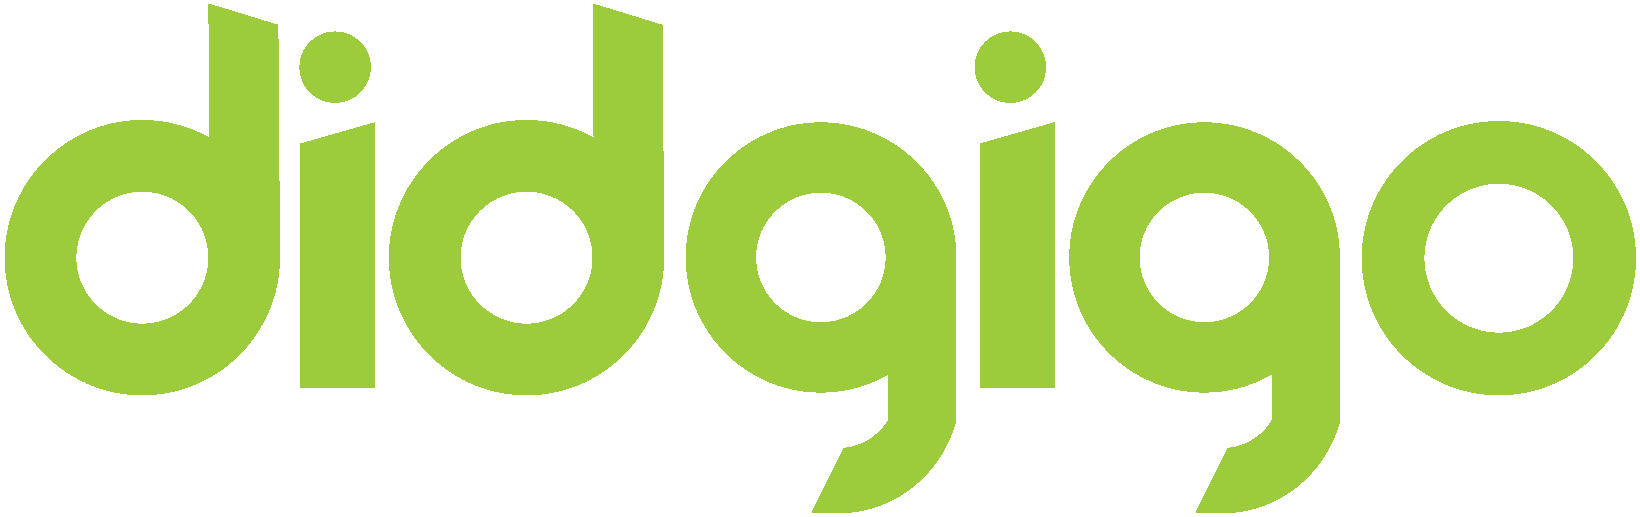 didgigo logo